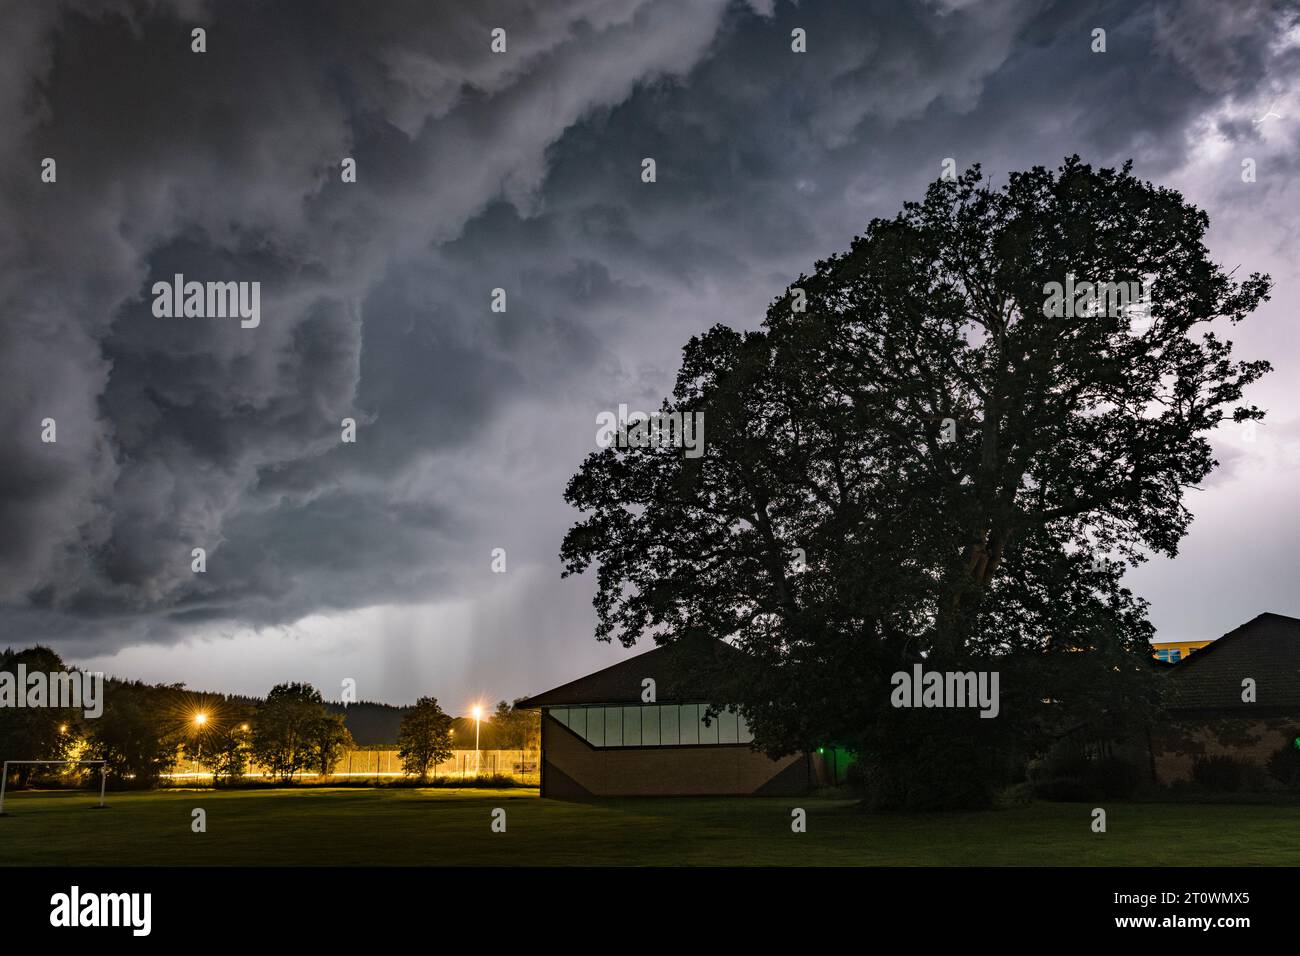 Dramatische Gewitterwolken und starker Regen nähern sich der walisischen Kleinstadt Presteigne, Powys, Großbritannien. Stockfoto